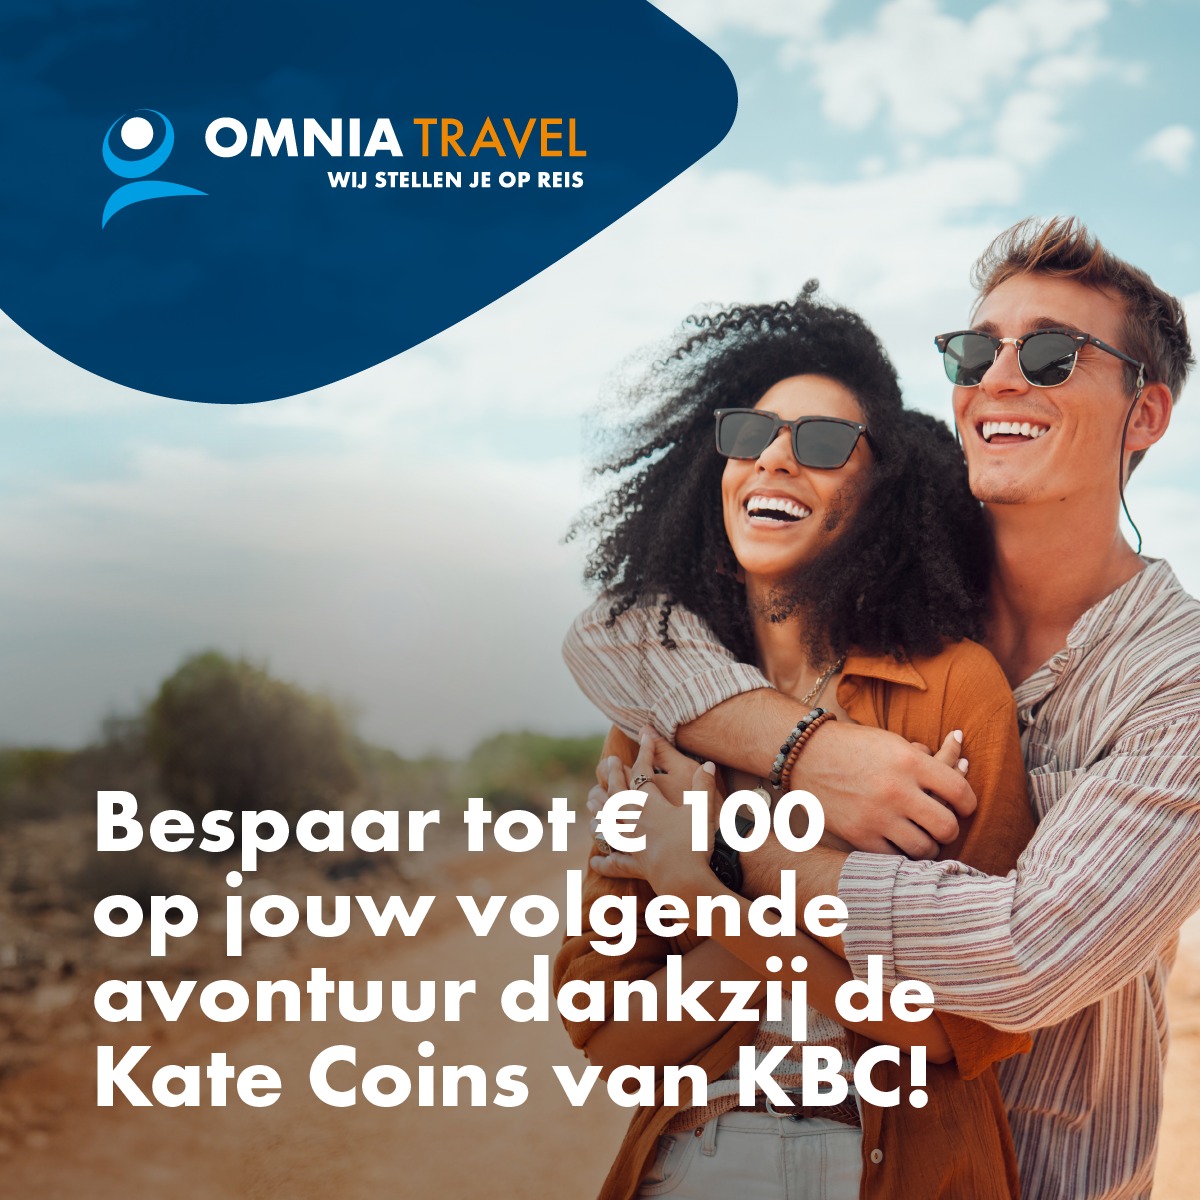 omnia travel kbc